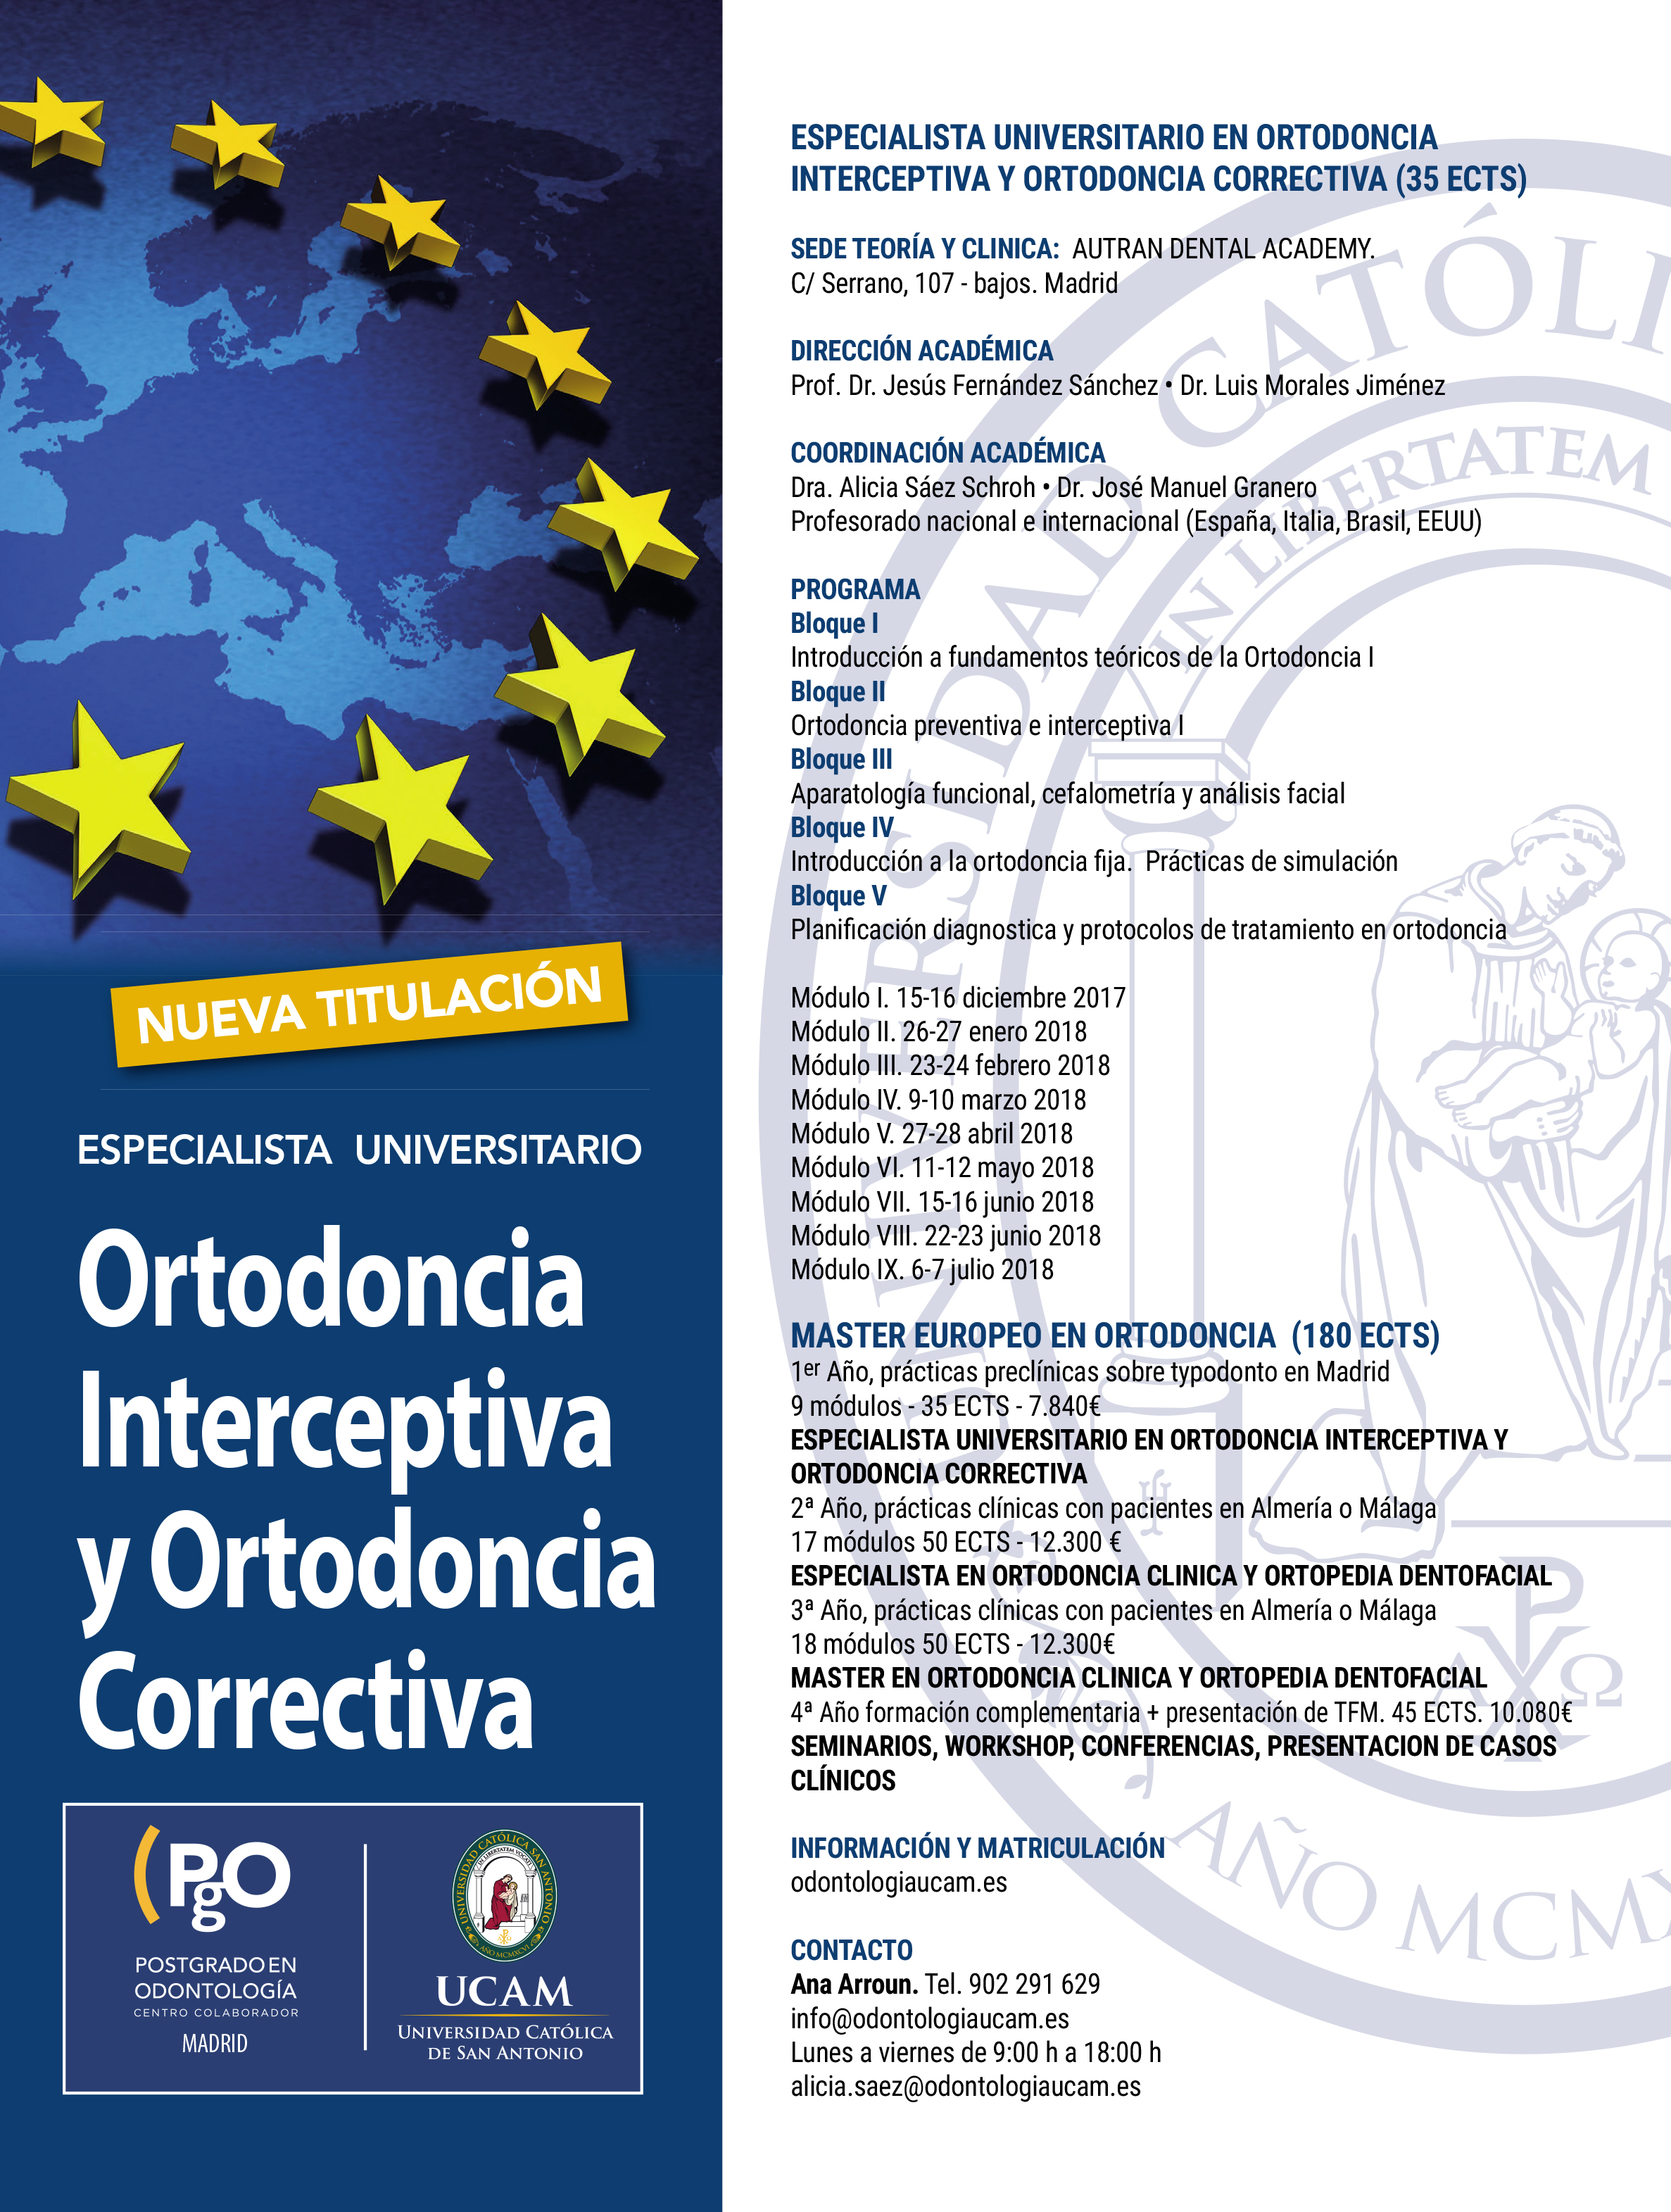 ESPECIALISTA UNIVERSITARIO  EN ORTODONCIA INTERCEPTIVA Y ORTODONCIA CORRECTICA - UCAM